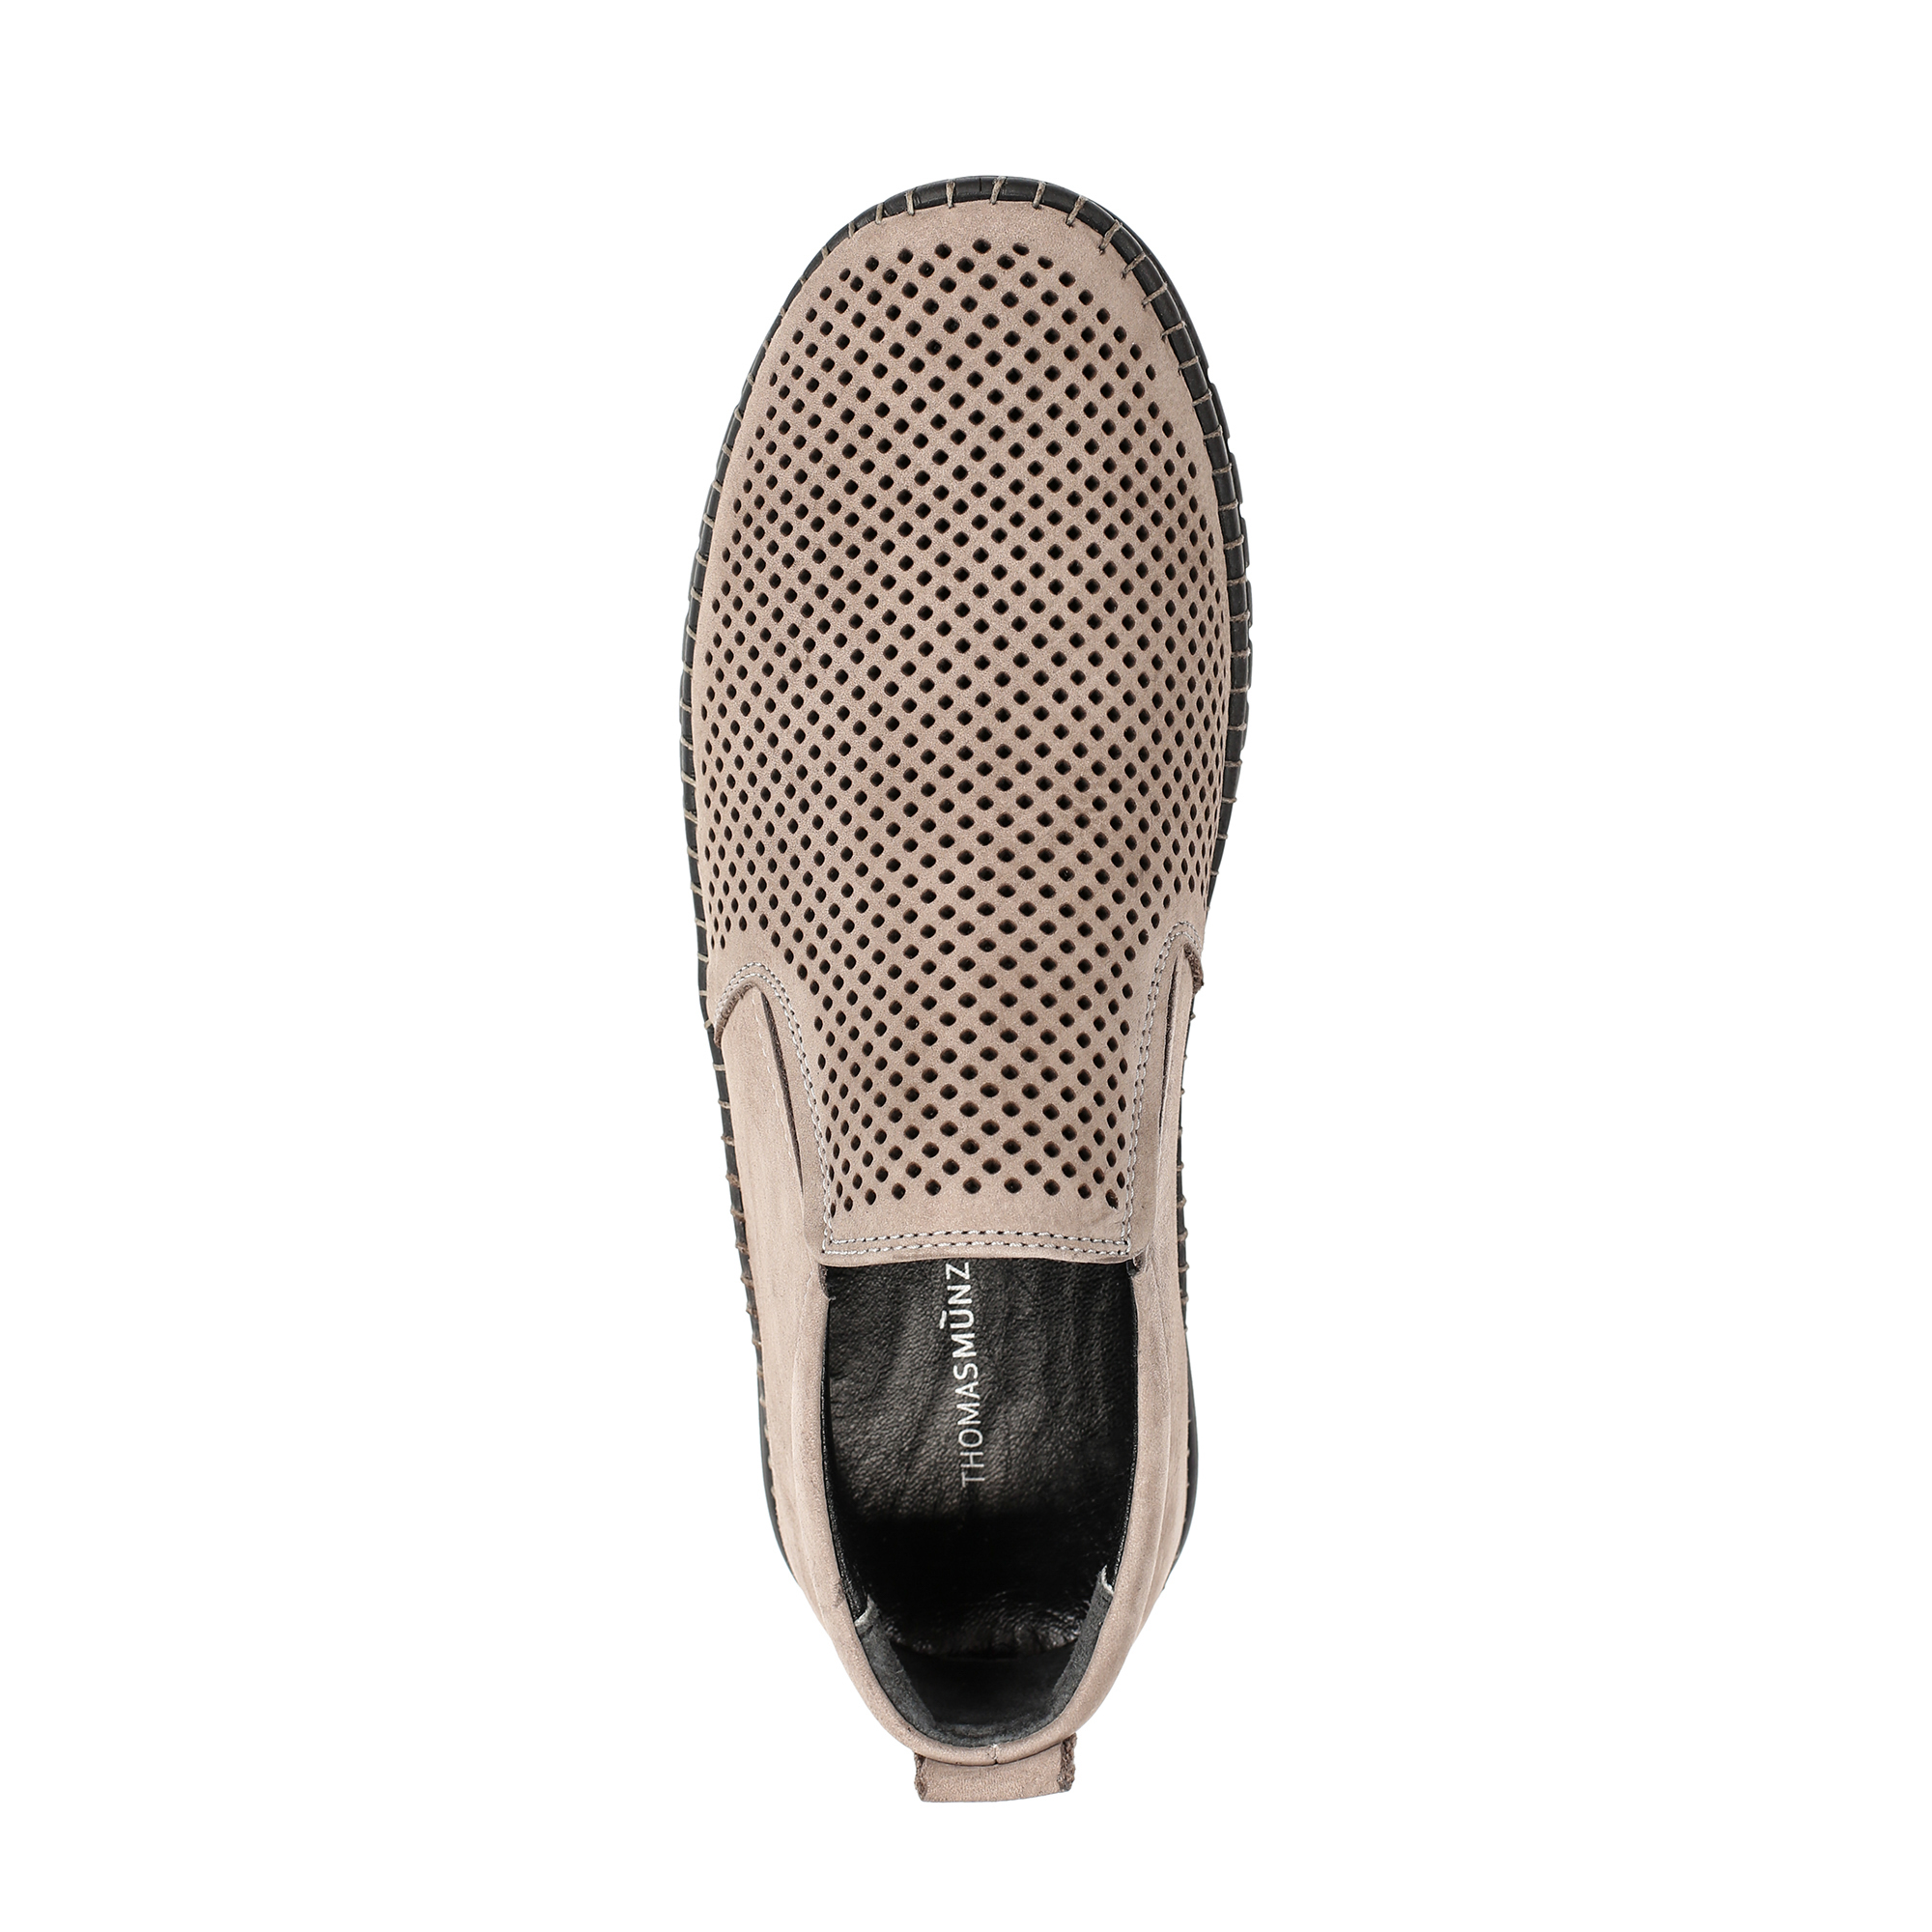 Туфли/полуботинки Thomas Munz 545-003A-10310, цвет серый, размер 40 - фото 5